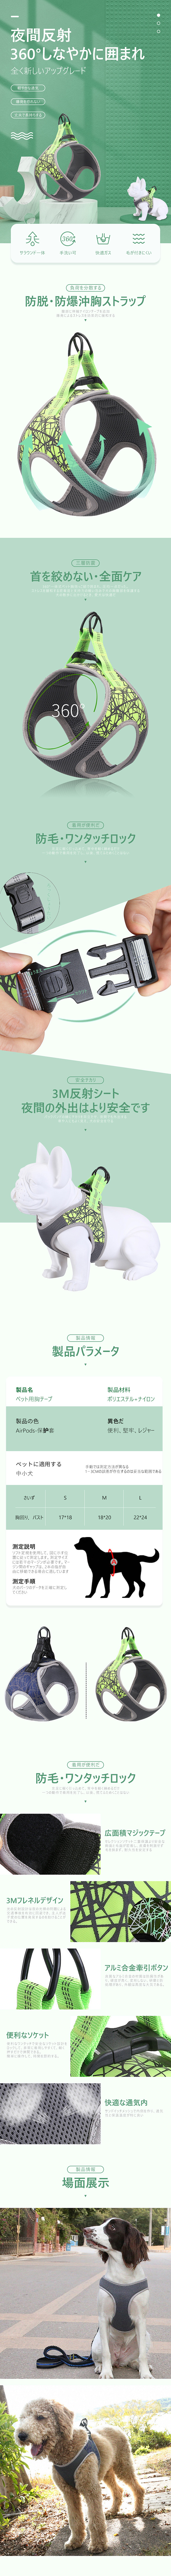 亚马逊日本站宠物用品详情页